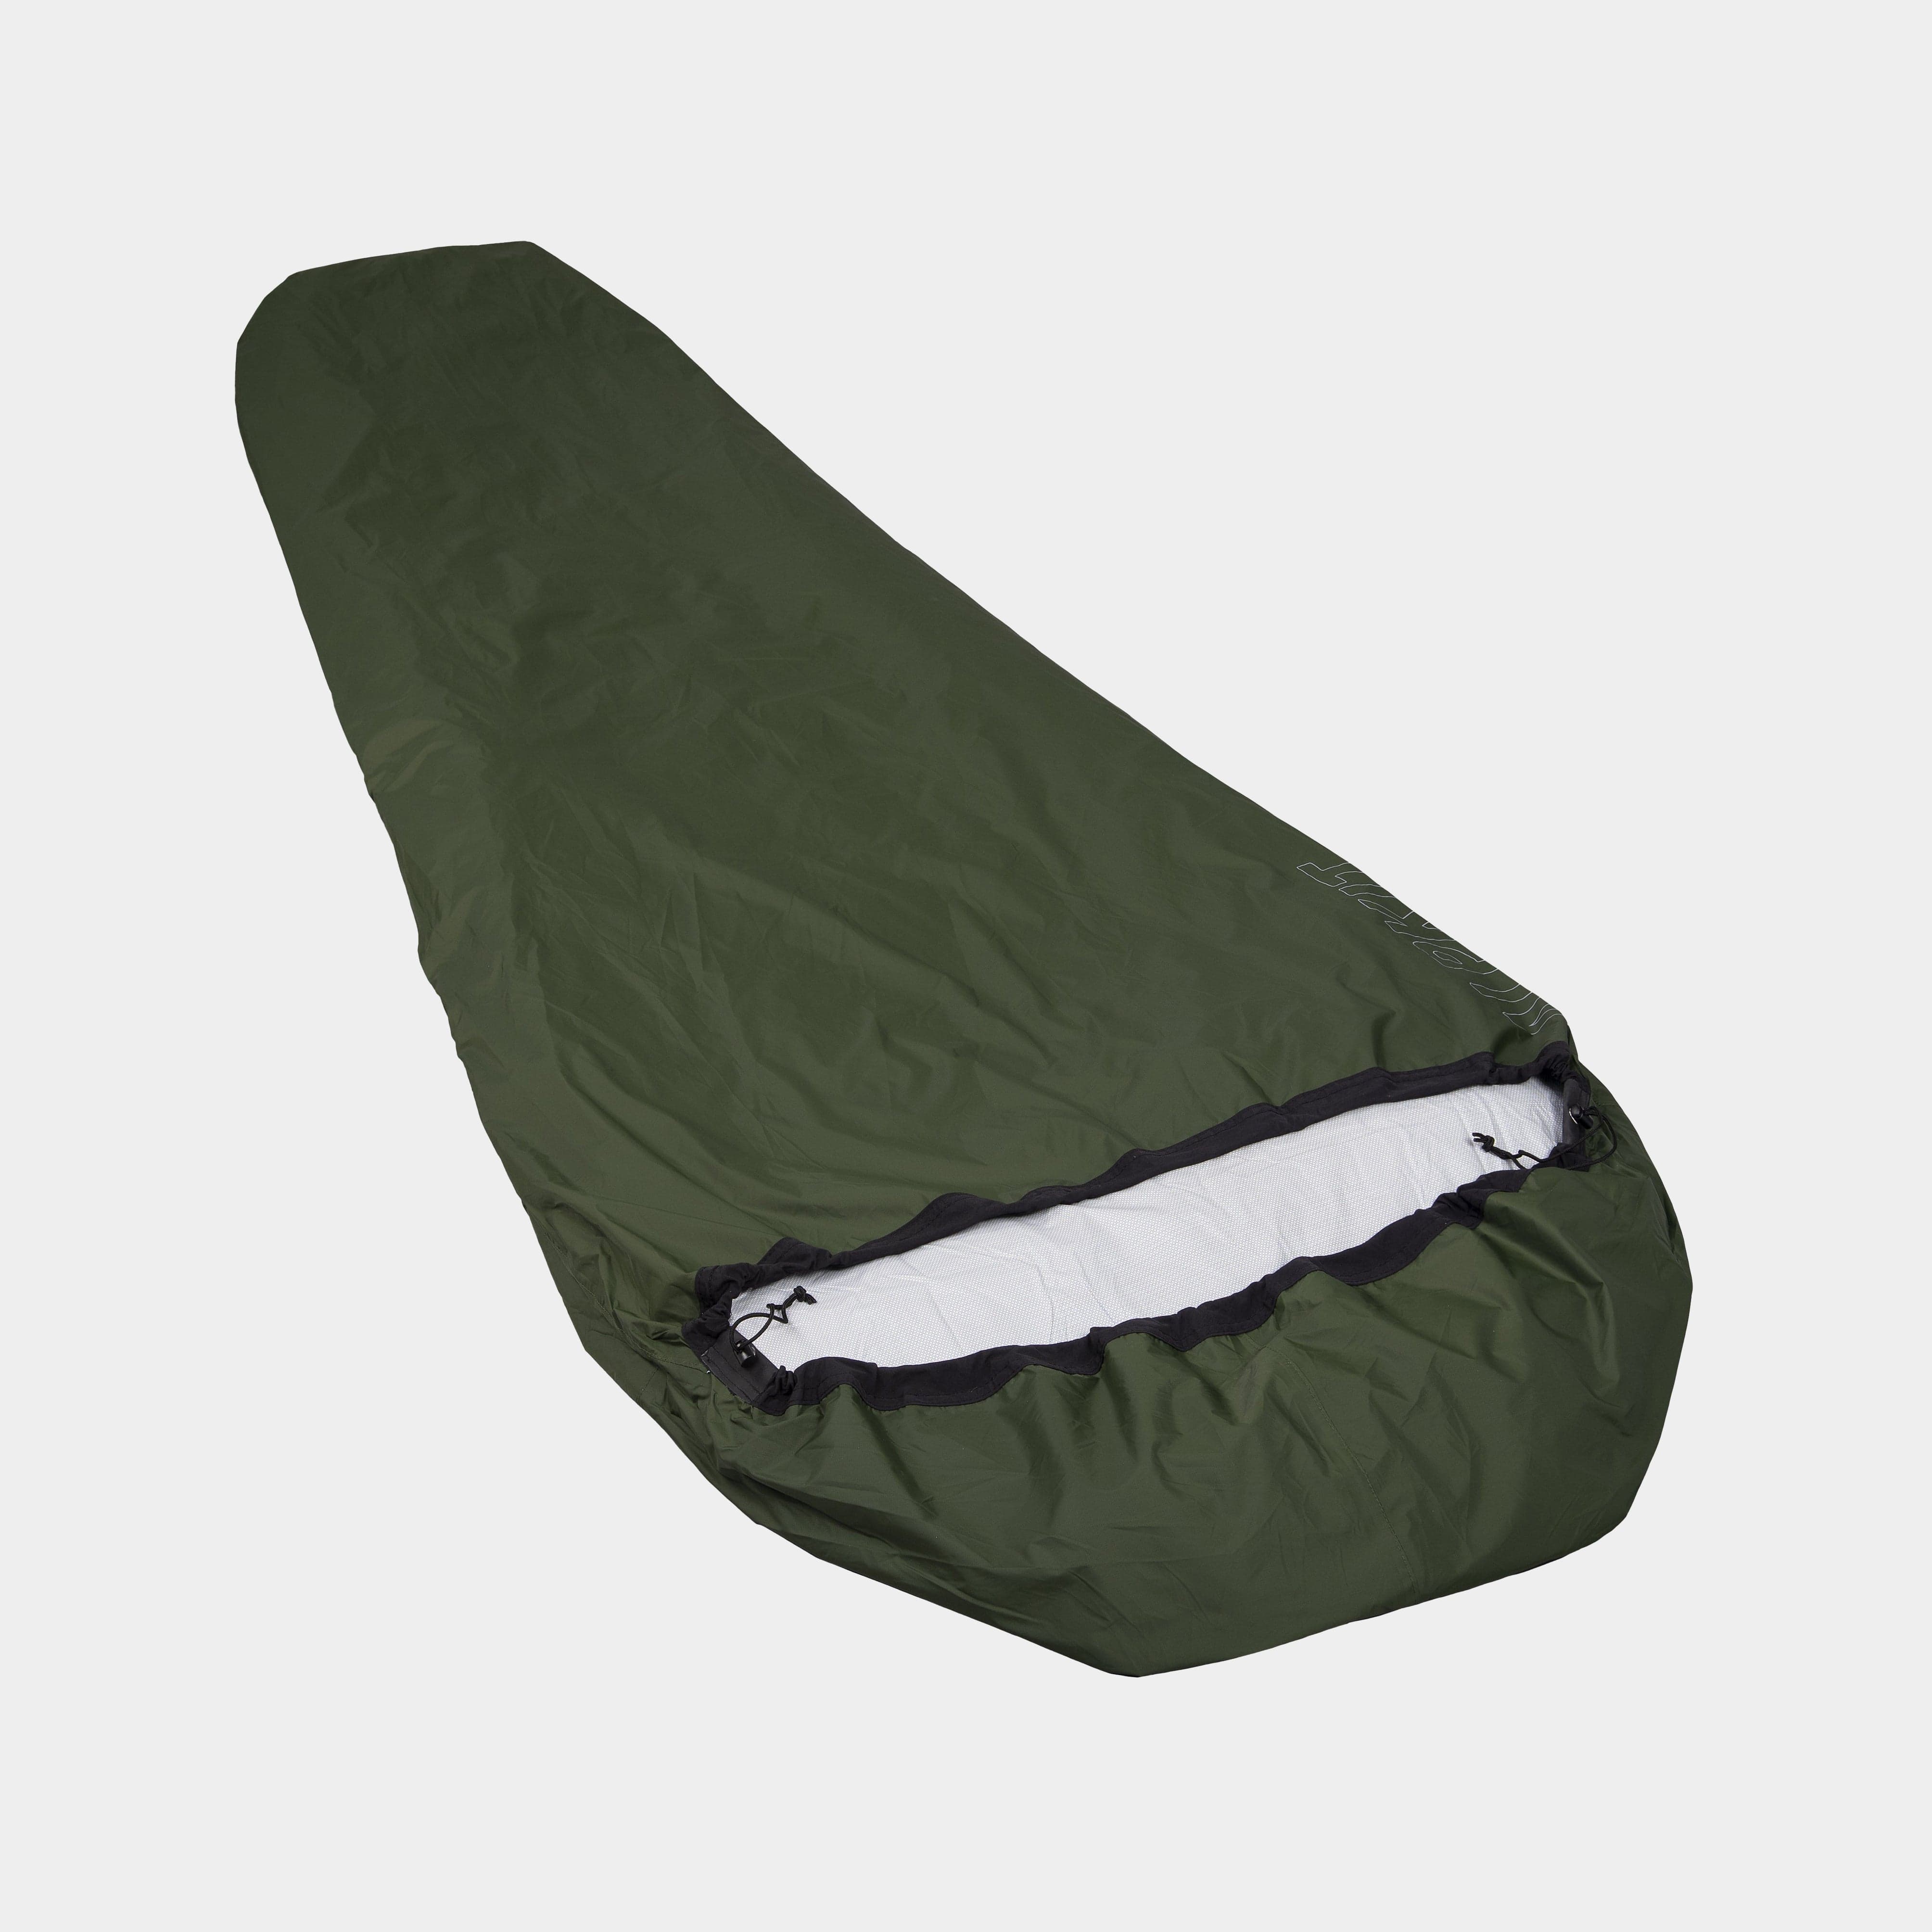 Elan - Lightweight, Waterproof Hooped Bivvy Bag